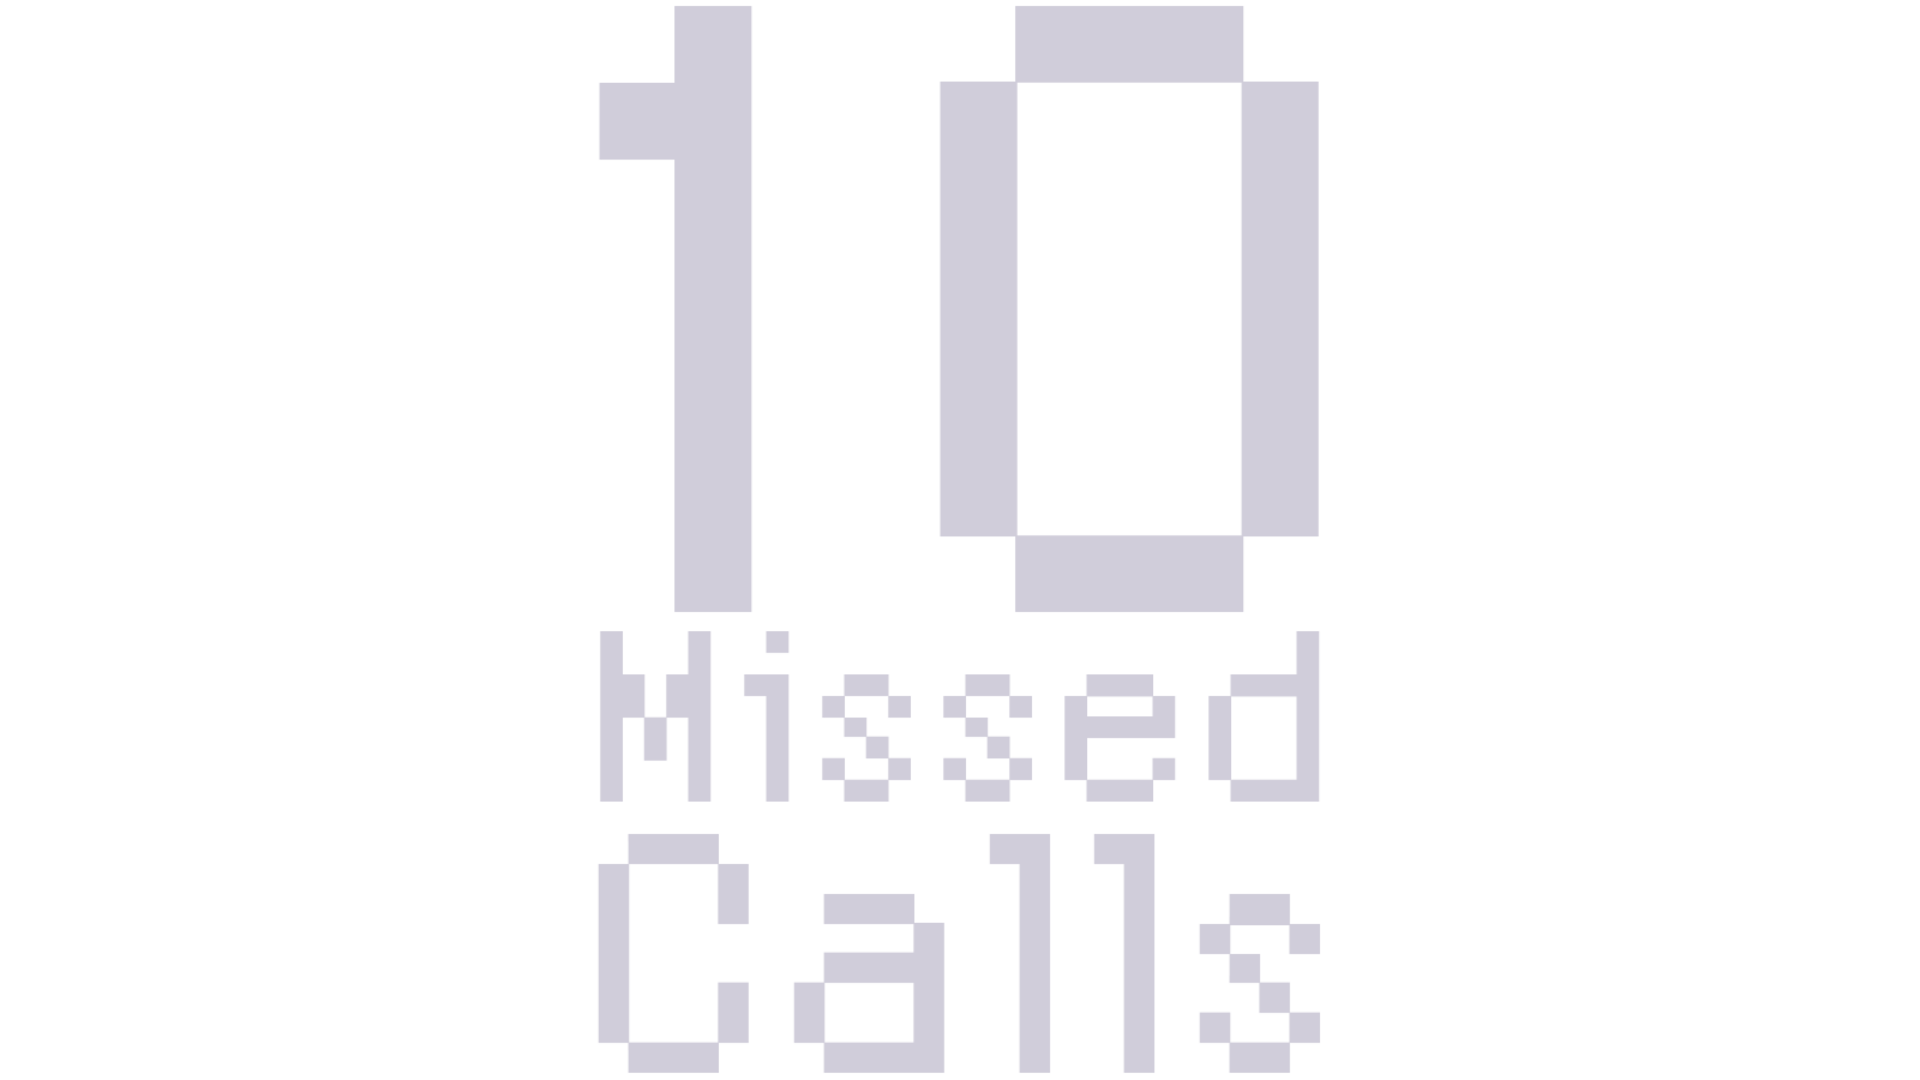 10 Missed Calls